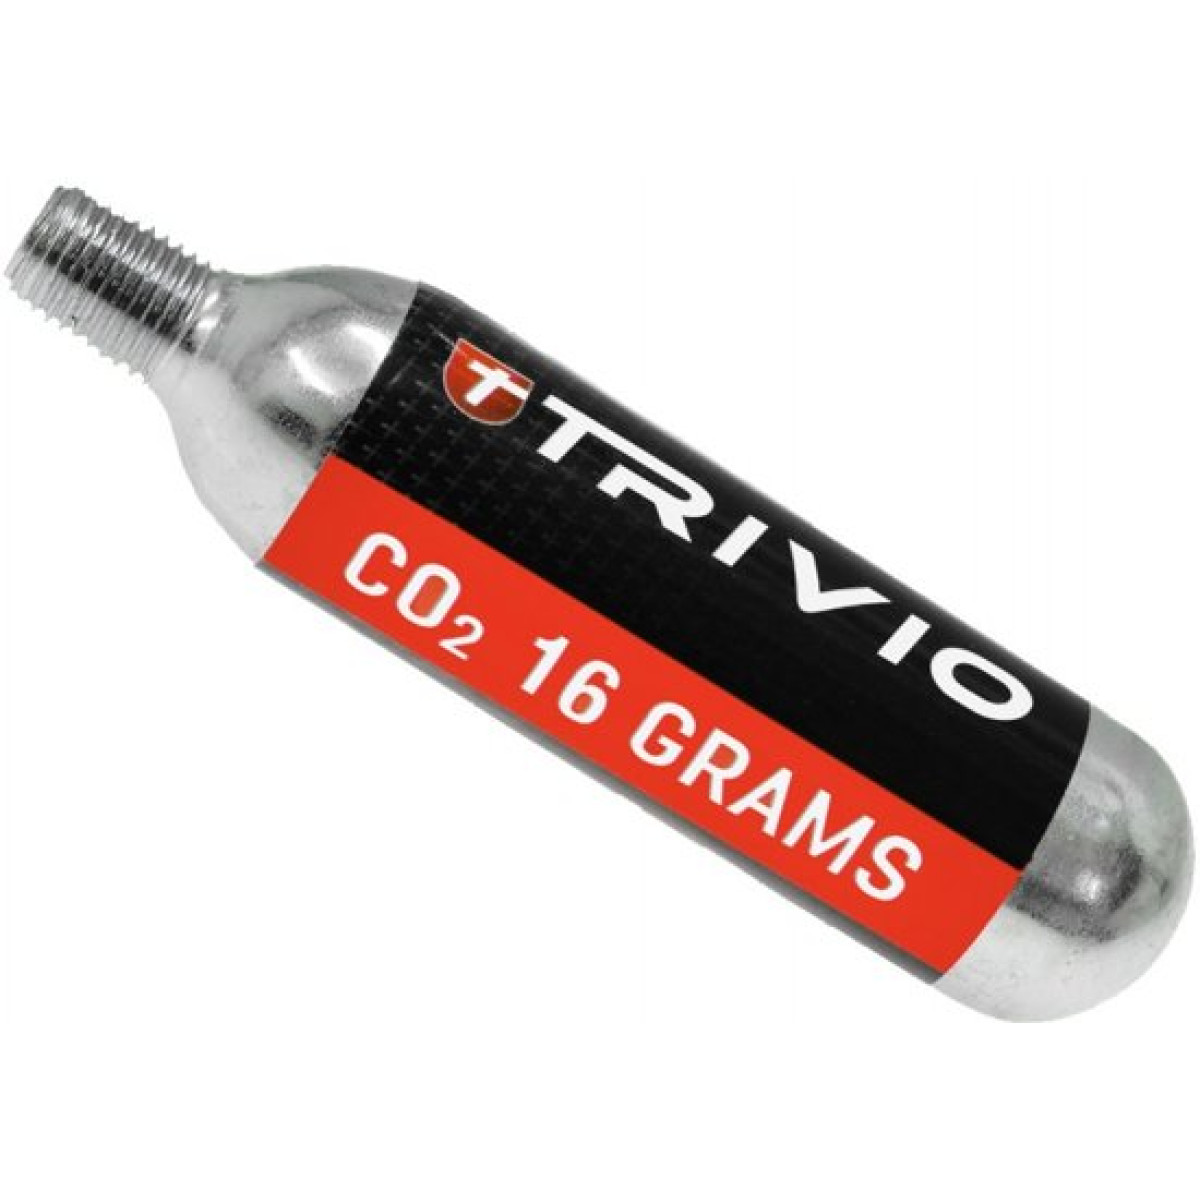 TRIVIO - Adaptateur CO2 comprenant 2 cartouches supplémentaires 16 grammes